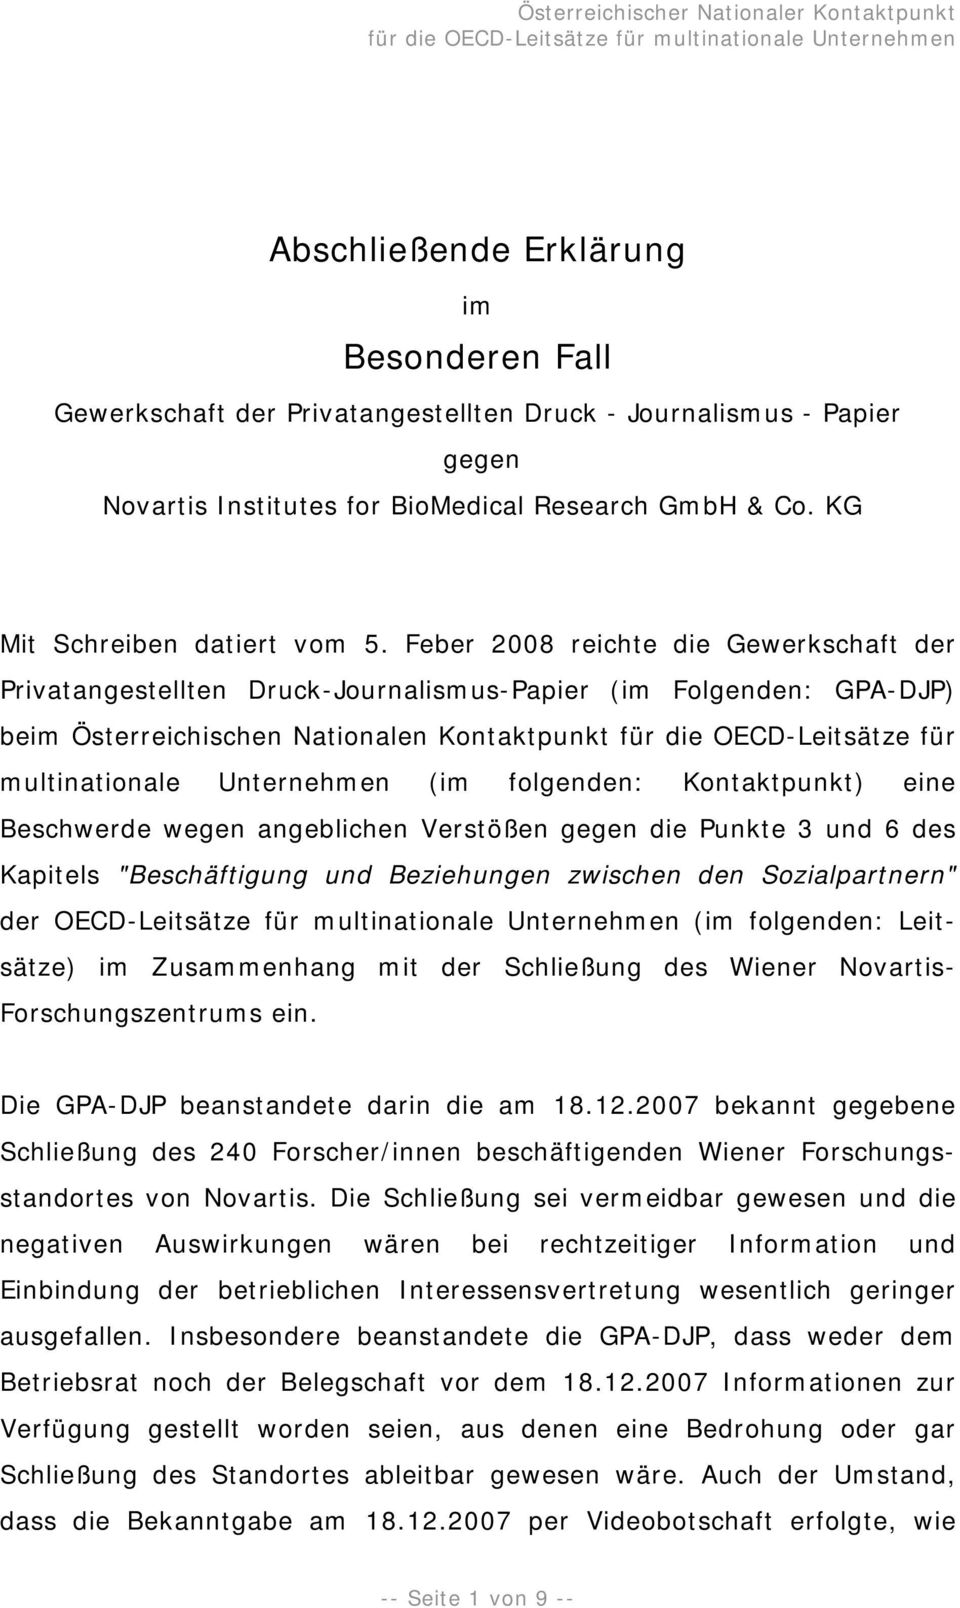 Feber 2008 reichte die Gewerkschaft der Privatangestellten Druck-Journalismus-Papier (im Folgenden: GPA-DJP) beim Österreichischen Nationalen Kontaktpunkt für die OECD-Leitsätze für multinationale